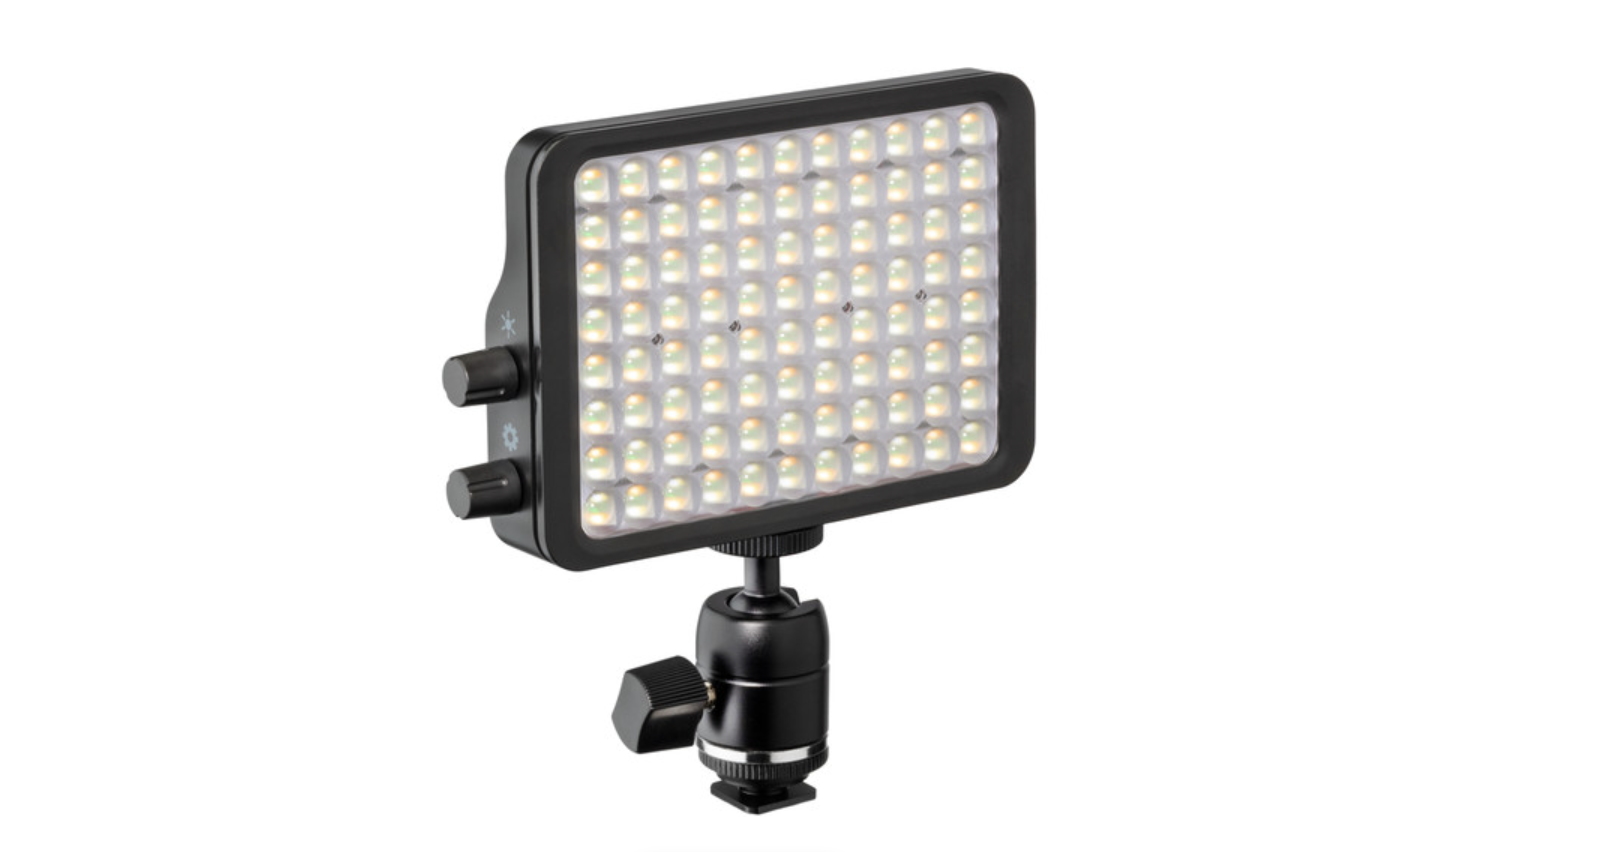 5-дюймовая светодиодная панель подсветки камеры Luxli Viola² продается за 149 долларов США.